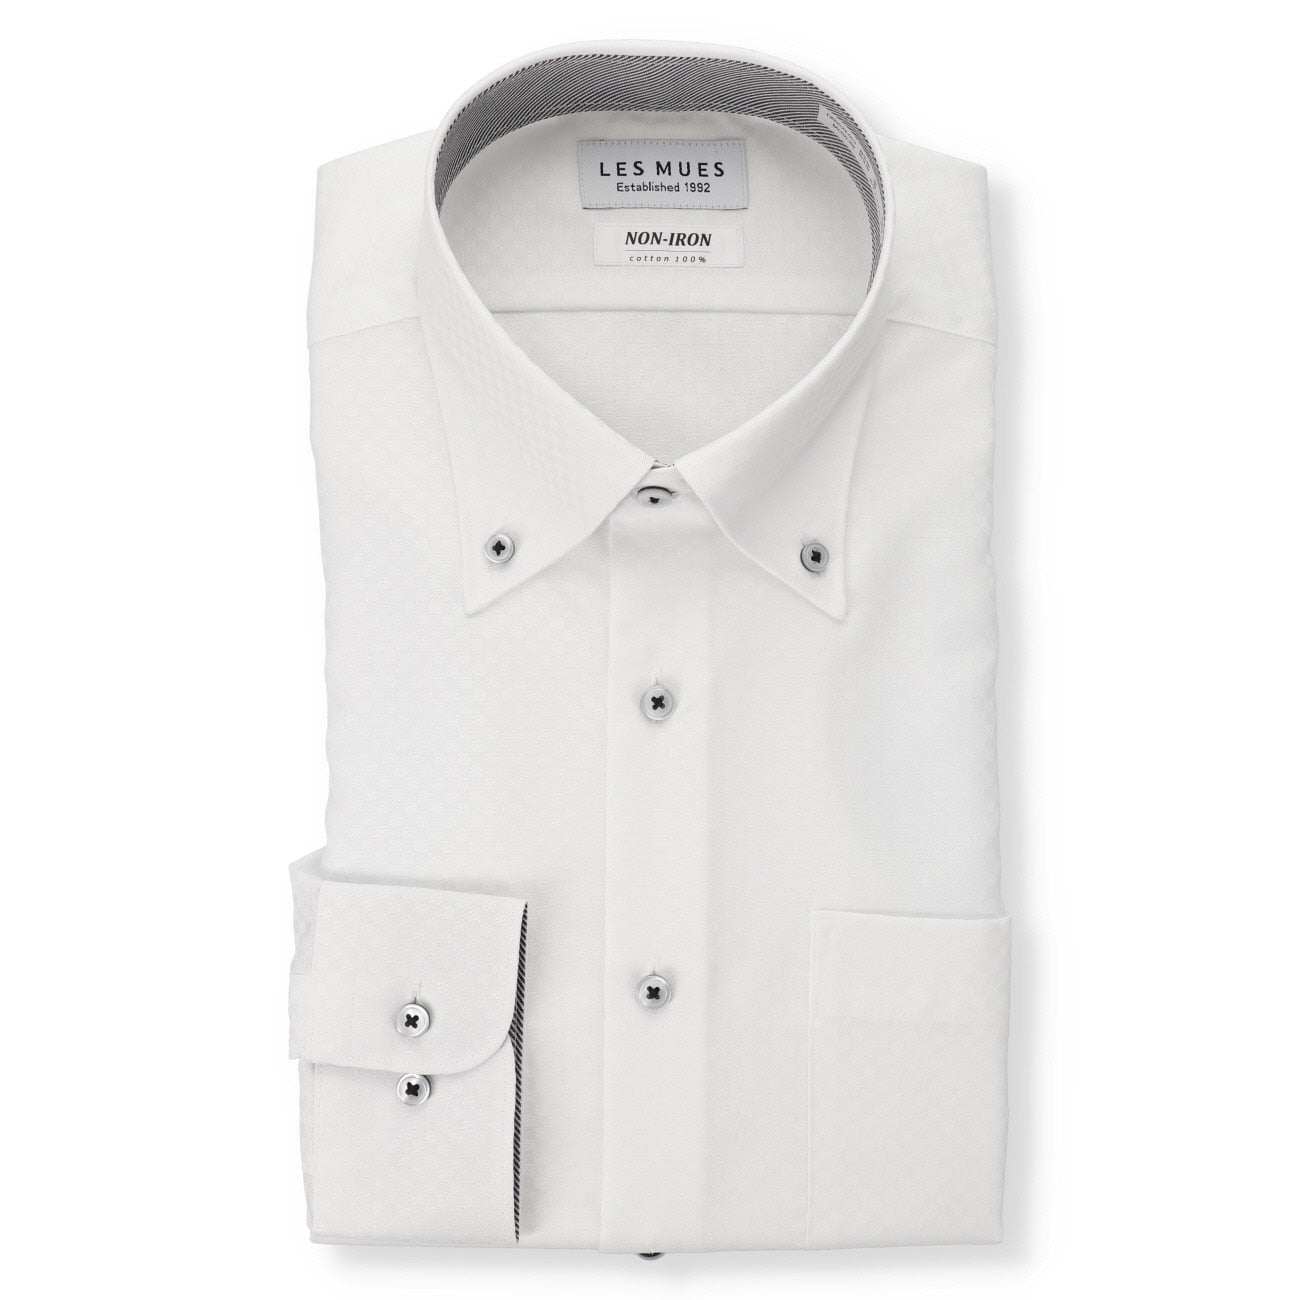 LES MUES Non-iron Cotton Button-down Shirt - Regular fit